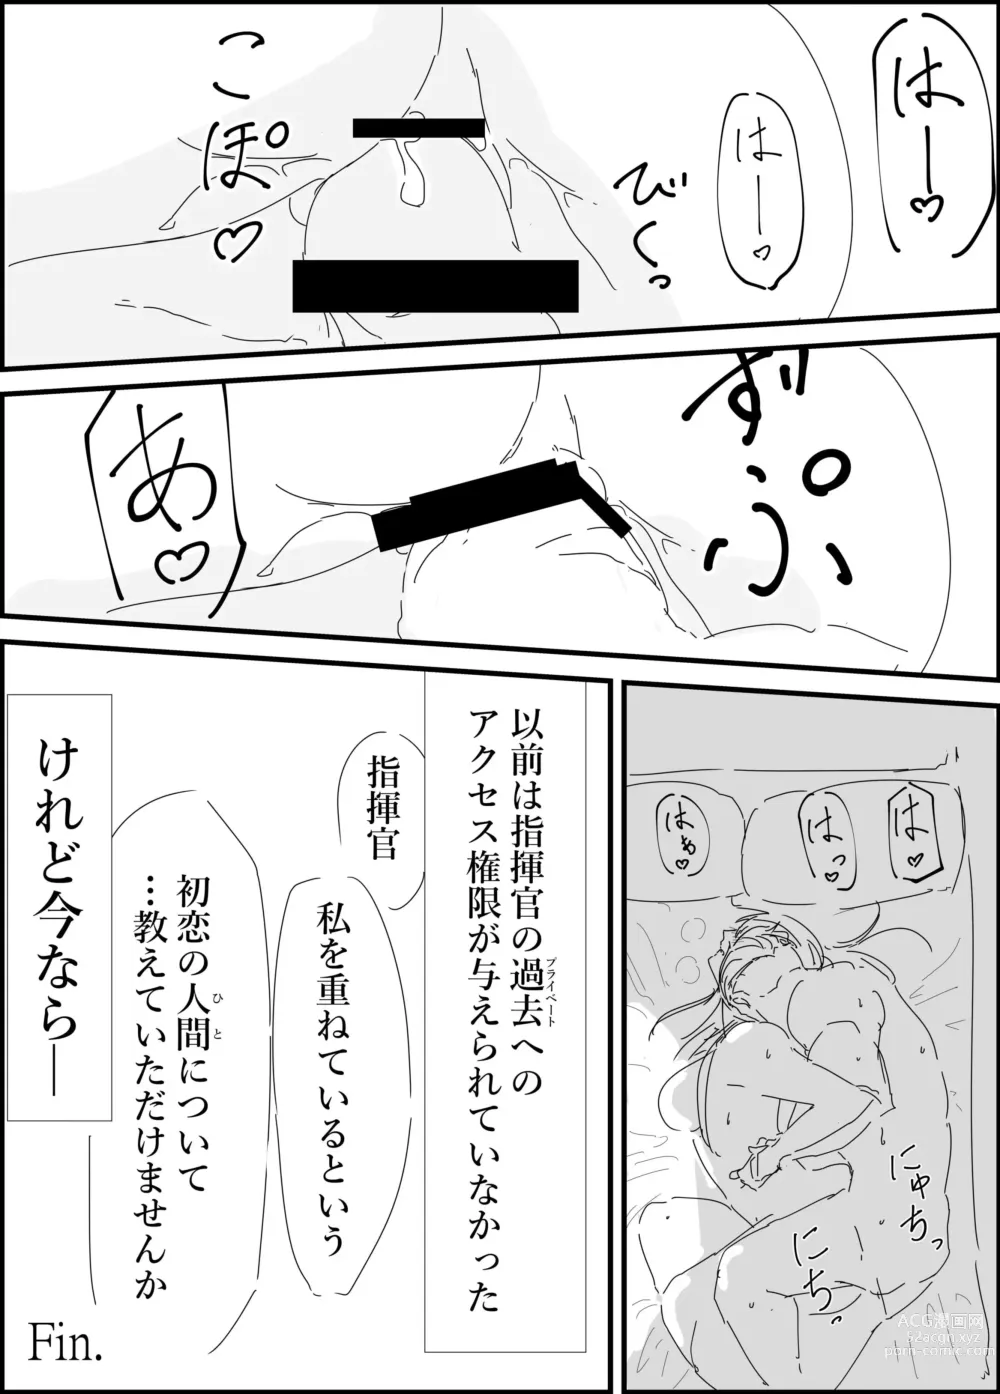 Page 12 of doujinshi Haruta san to.